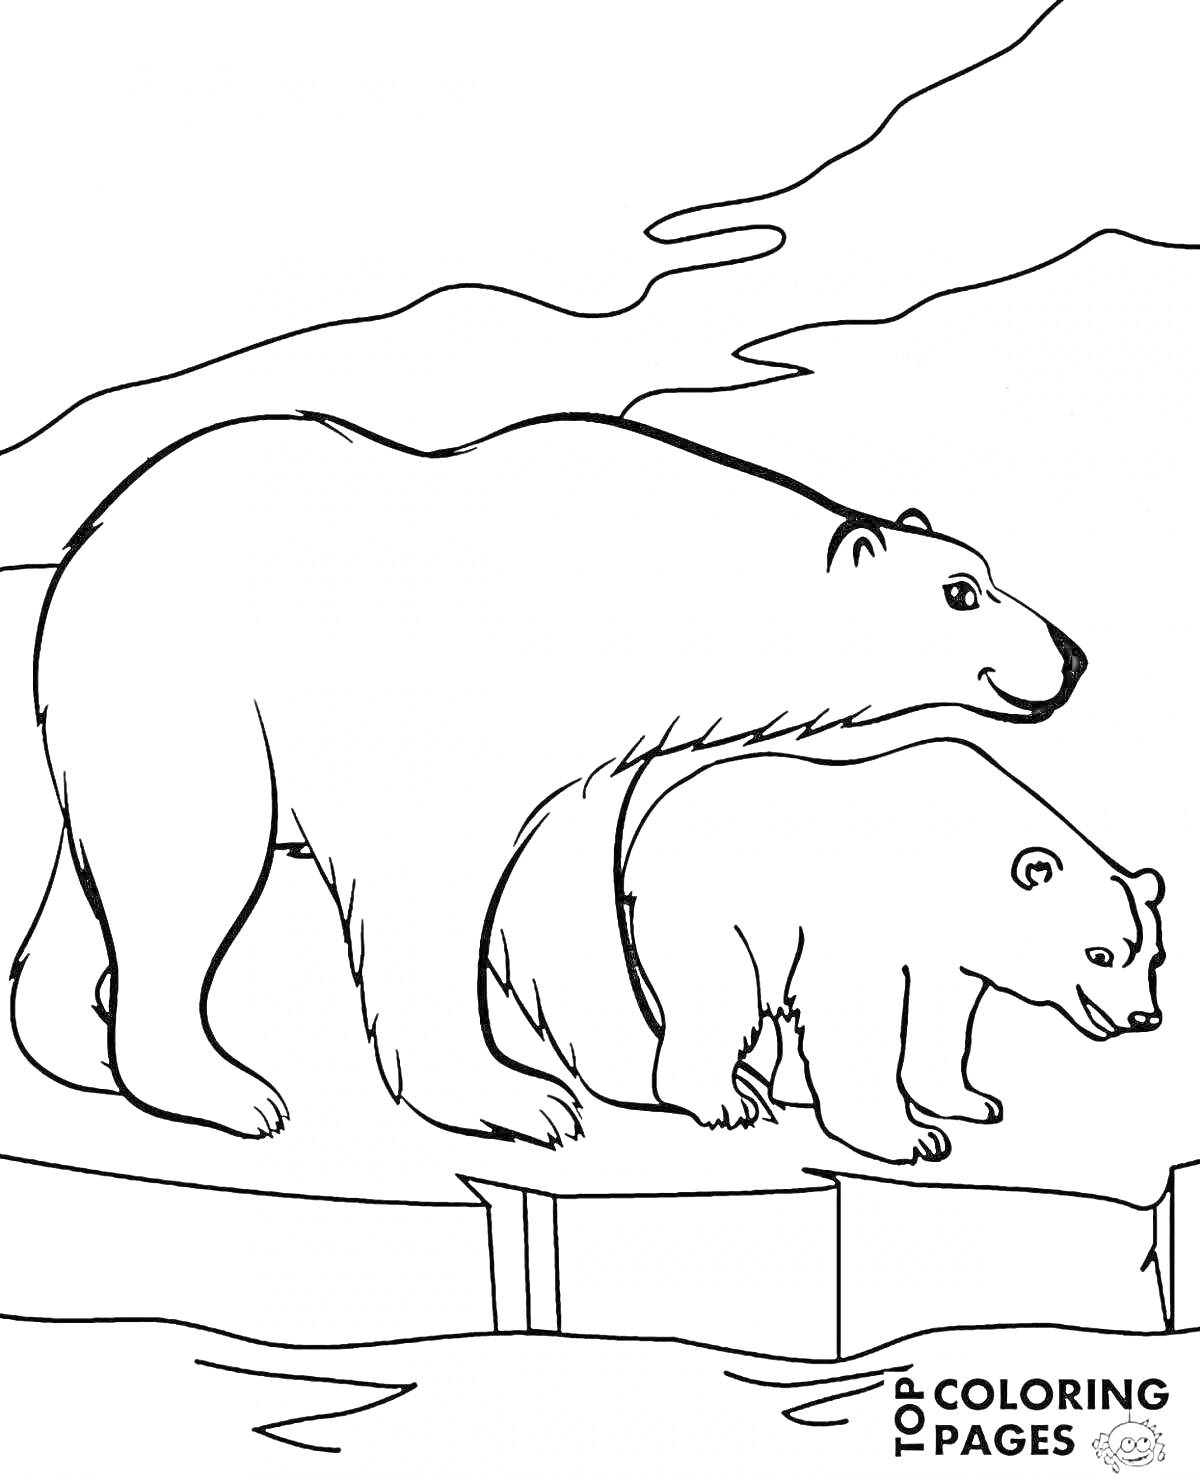 Раскраска Два белых медведя на льду со снежным фоном